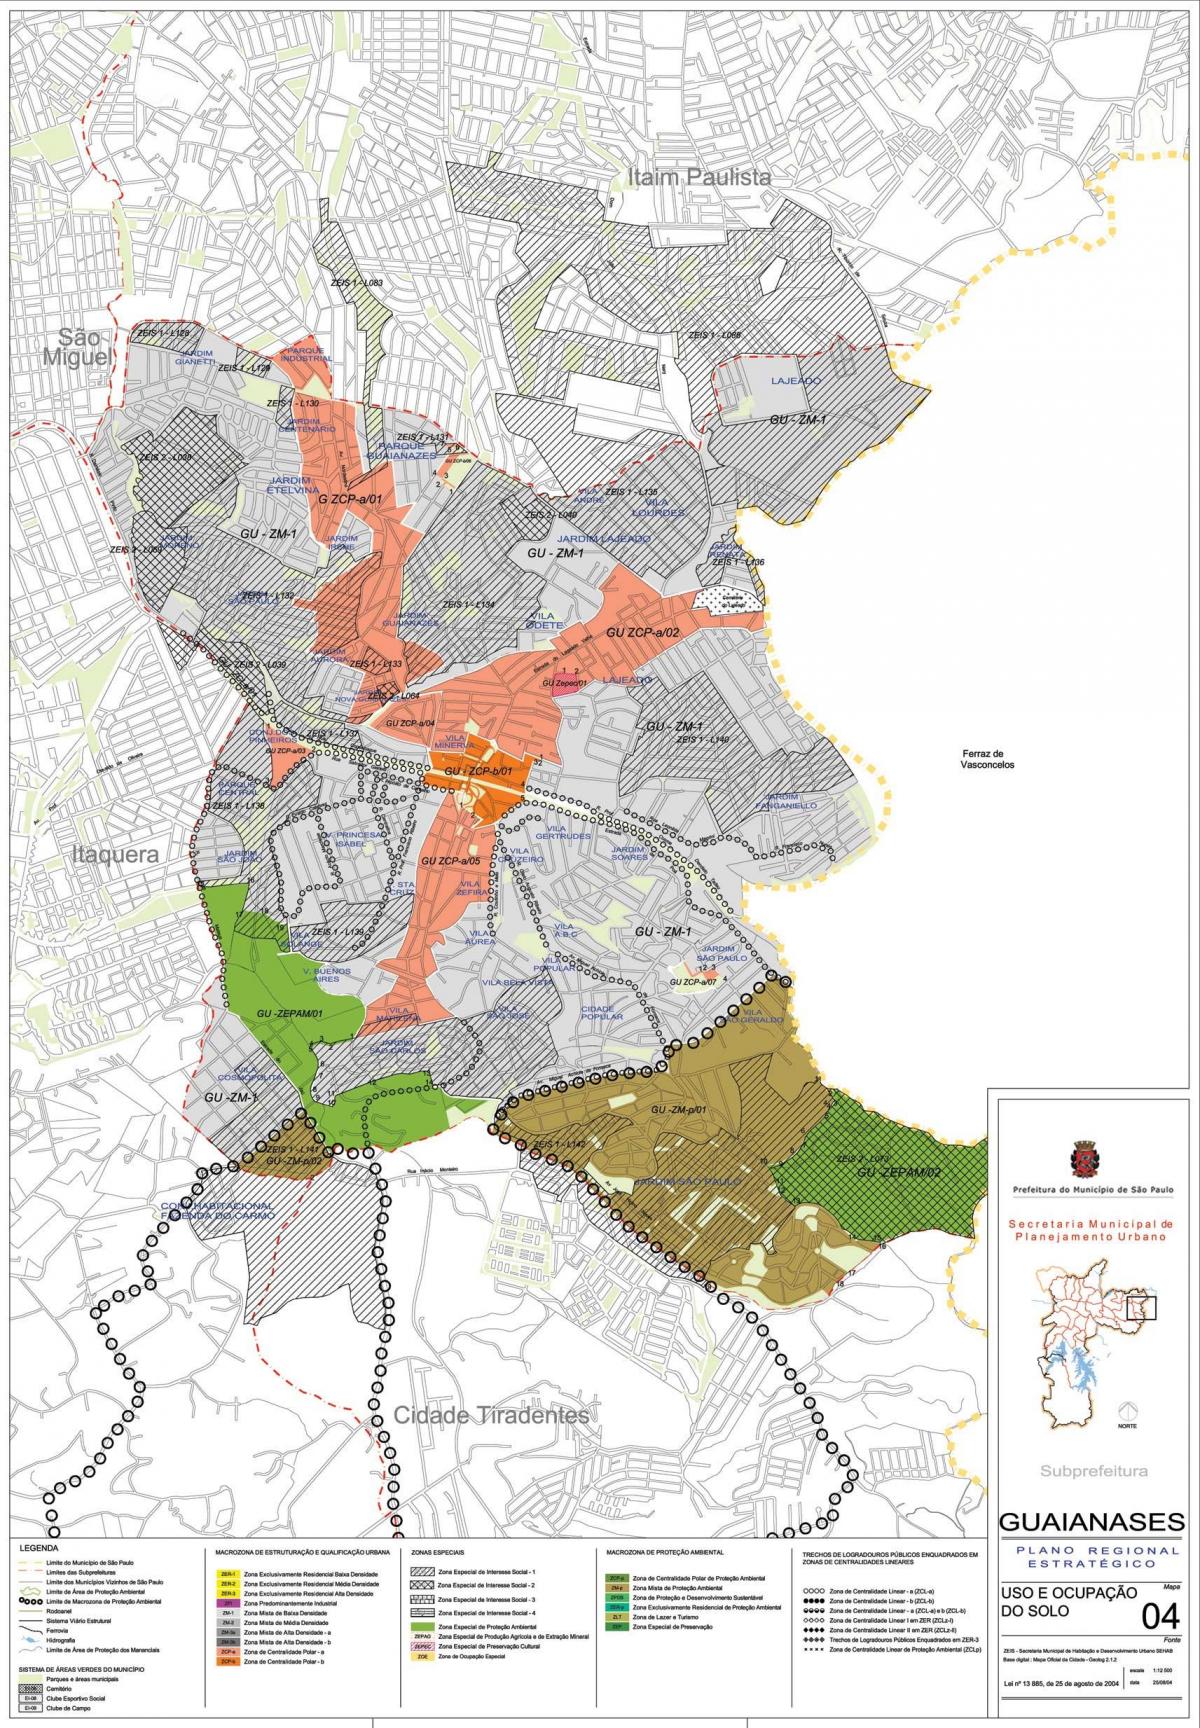 Mapa de Guaianases São Paulo - Ocupação do solo